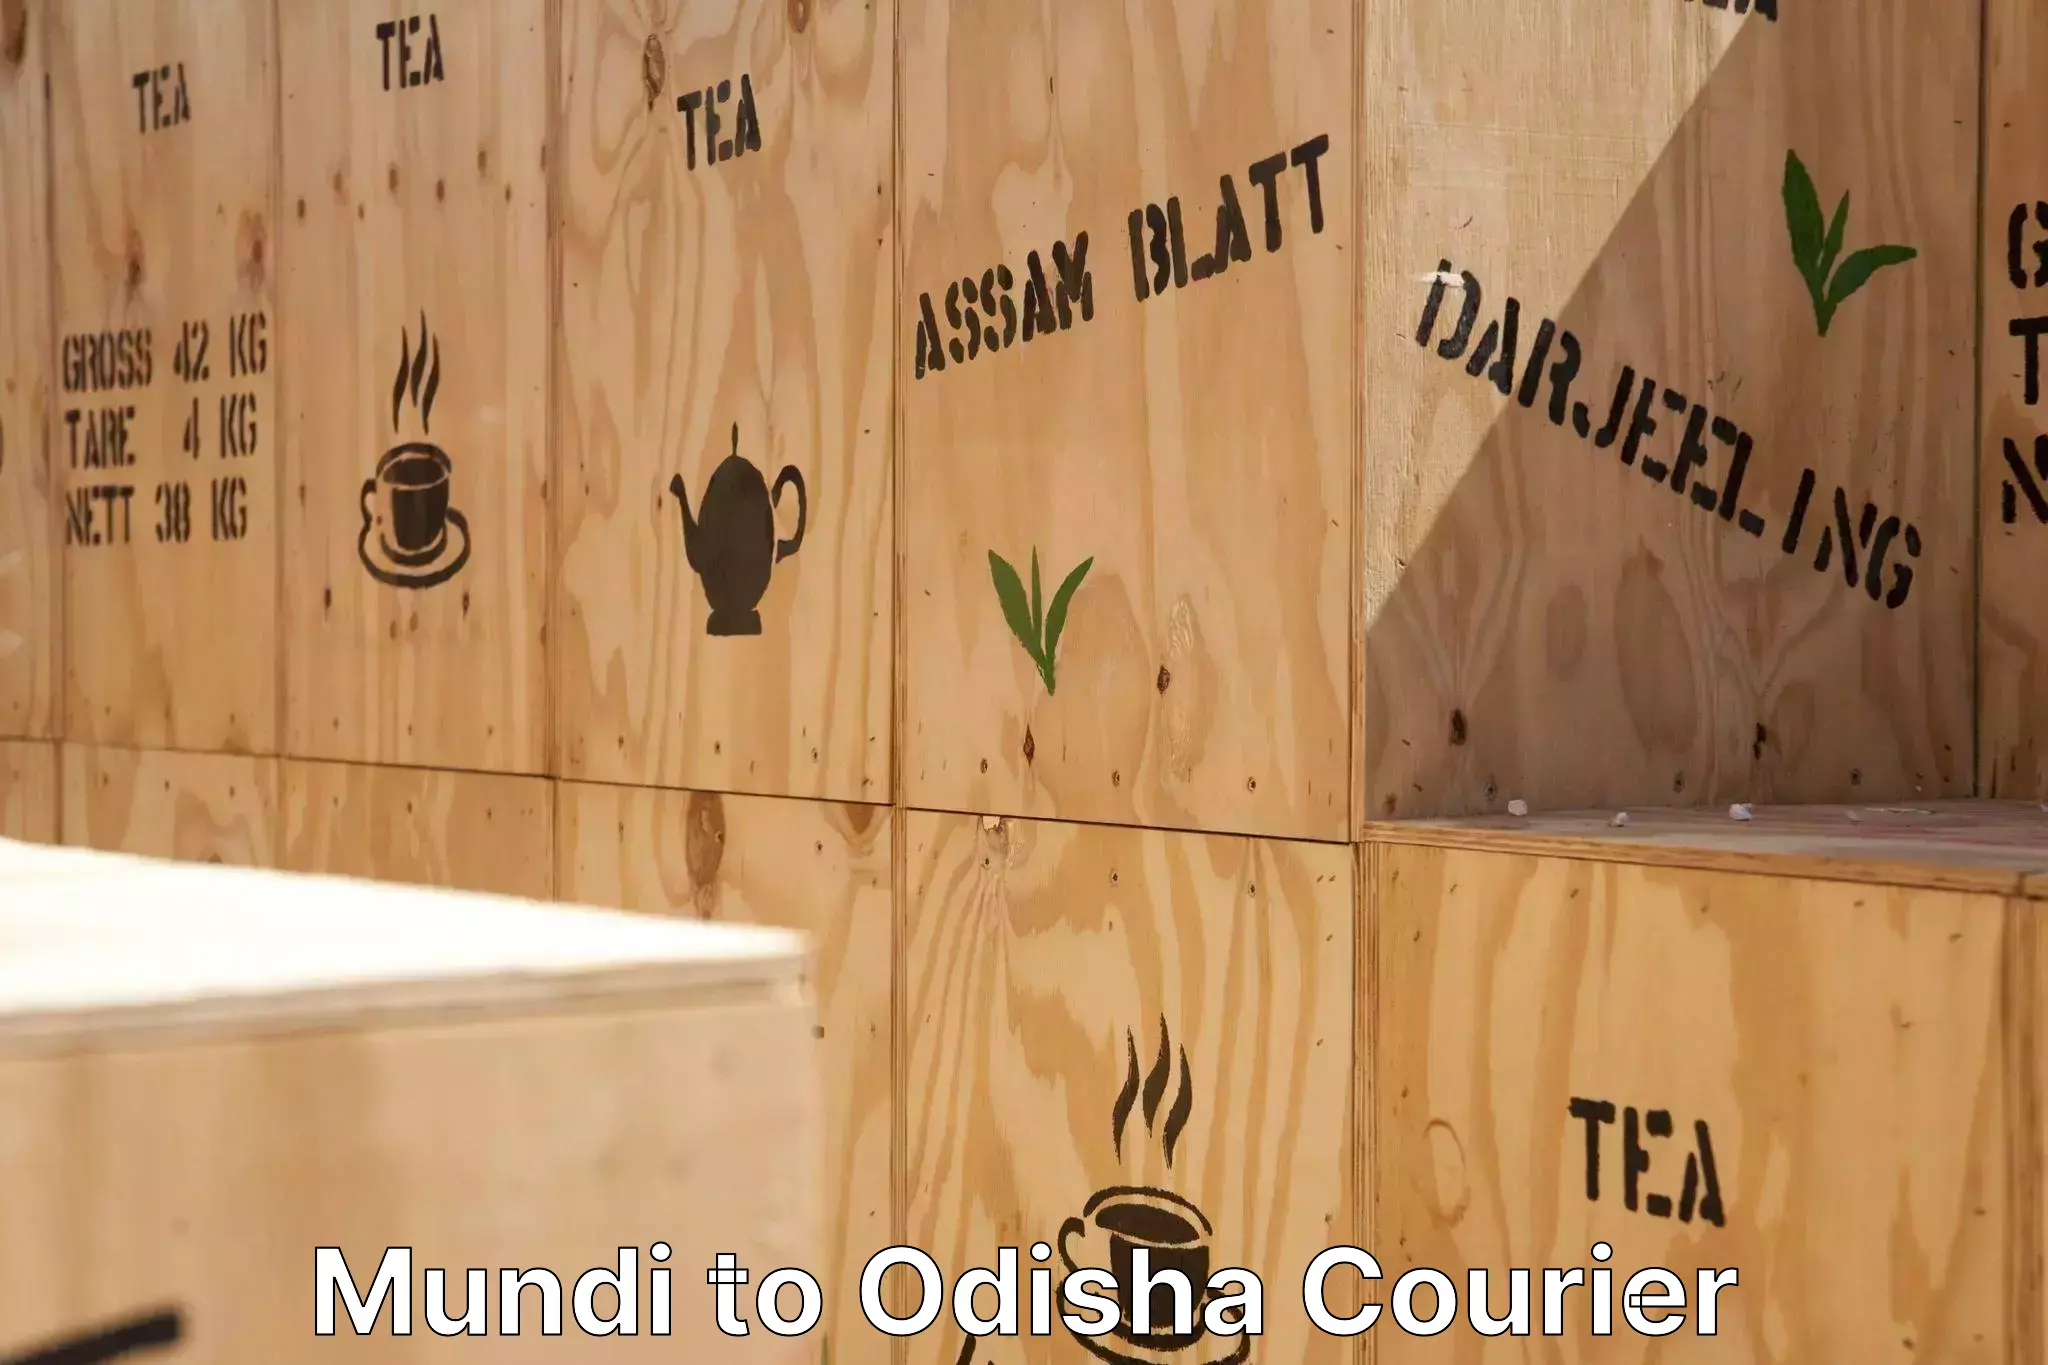 Furniture transport experts Mundi to Badamba